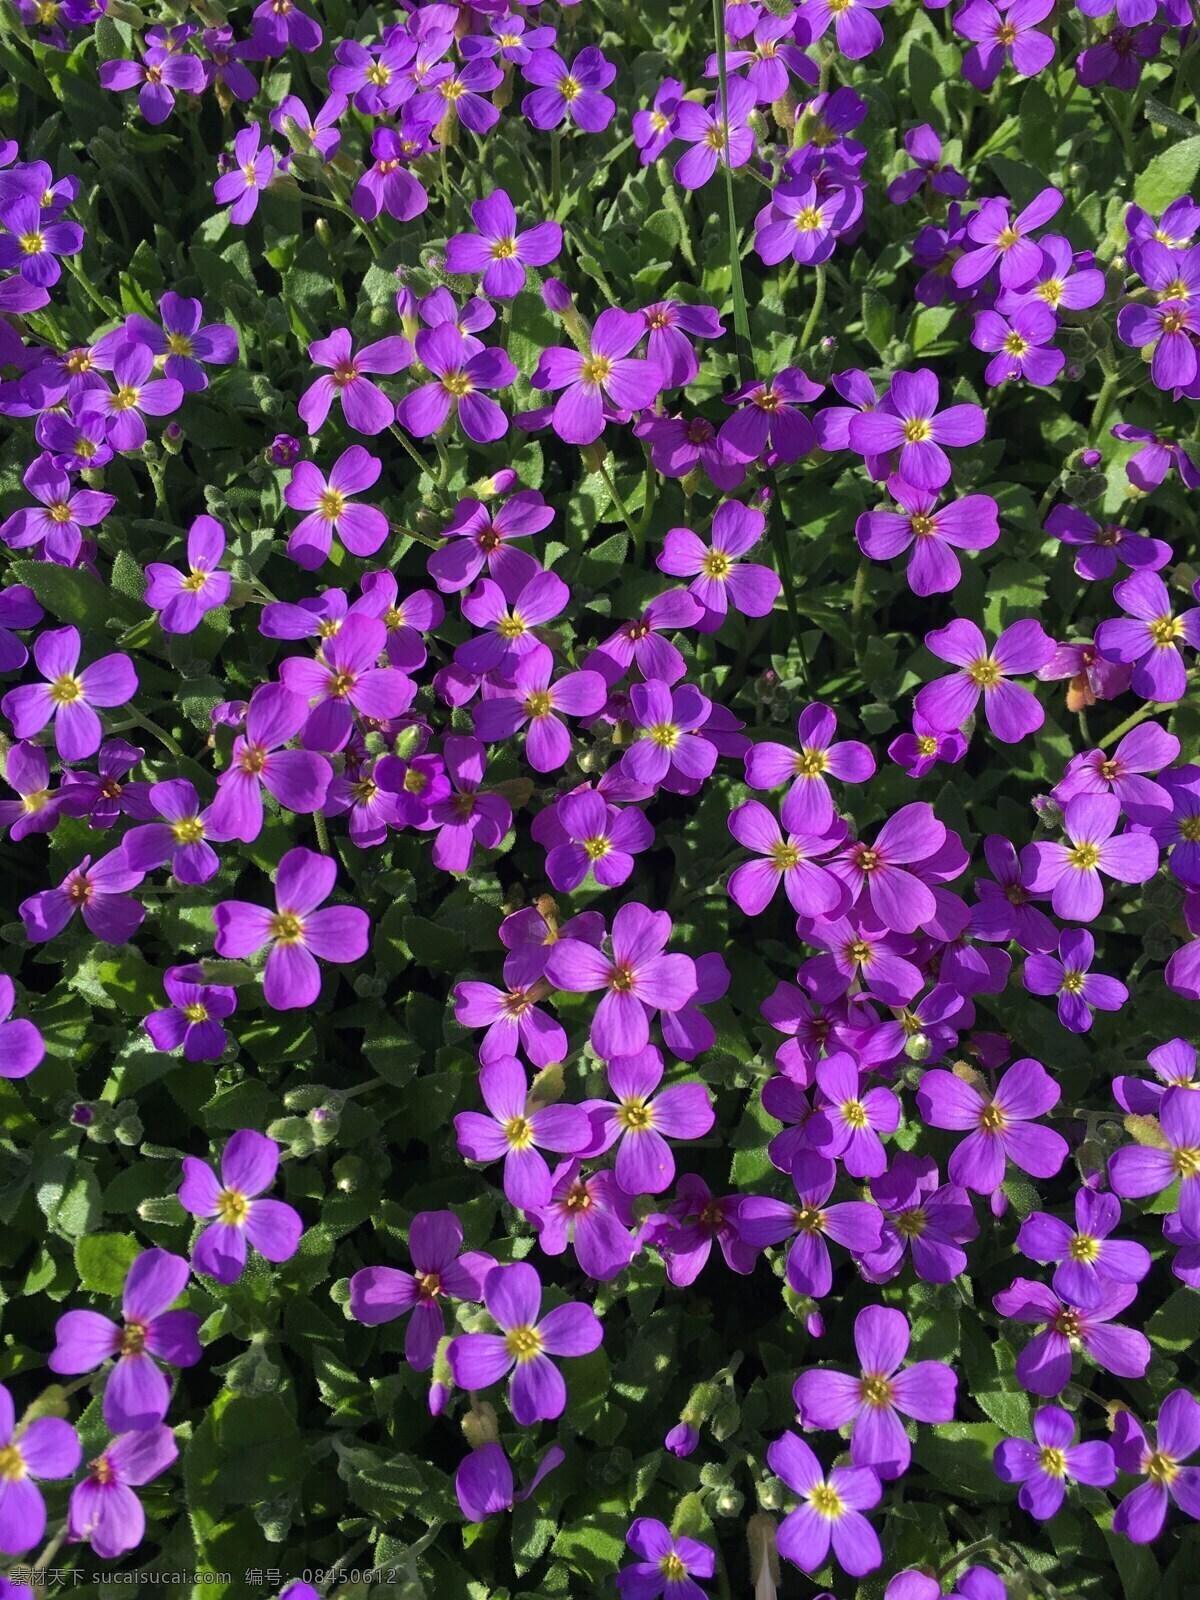 紫罗兰色花朵 紫罗兰色 紫色 紫色花 紫色野花 紫色小花 紫色花朵 鲜花 花海 植物 生物世界 花卉 花朵 小花 花瓣 小清新 清新 野花 花丛 花草